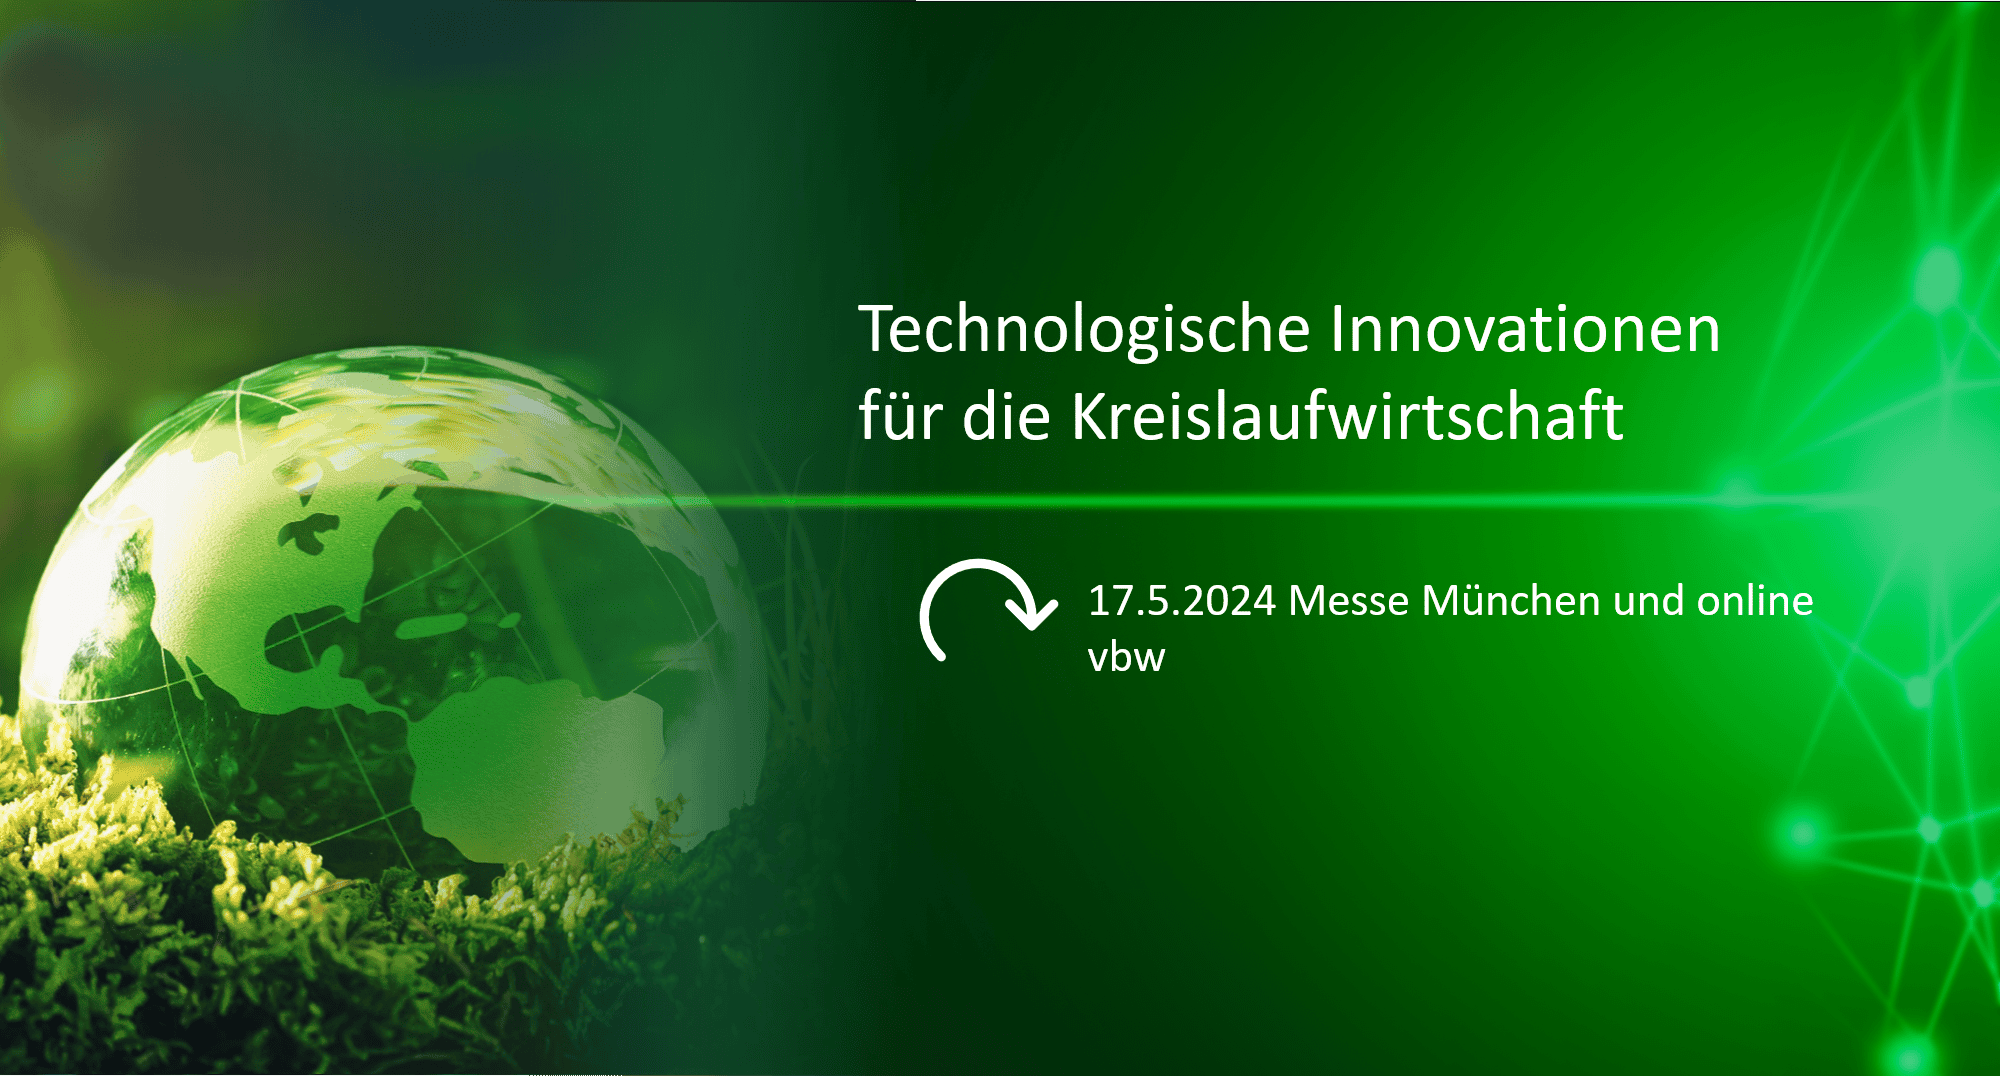 vbw-Veranstaltung: Technologische Innovationen für die Kreislaufwirtschaft am 17.5.2024